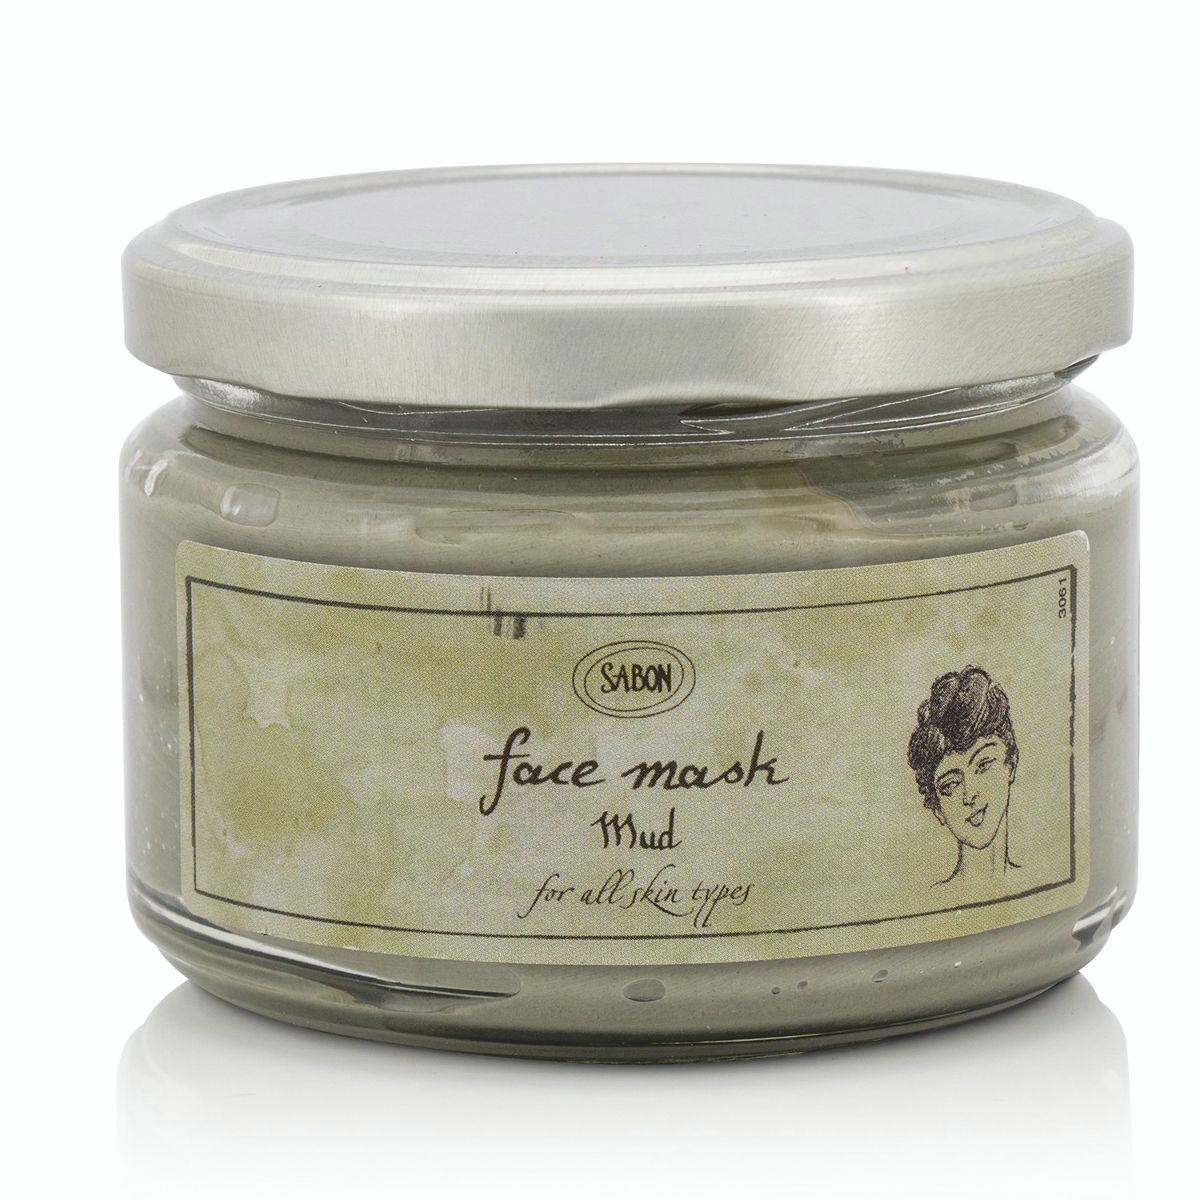 Face Mask Mud - For All Skin Types 987967 Sabon Image